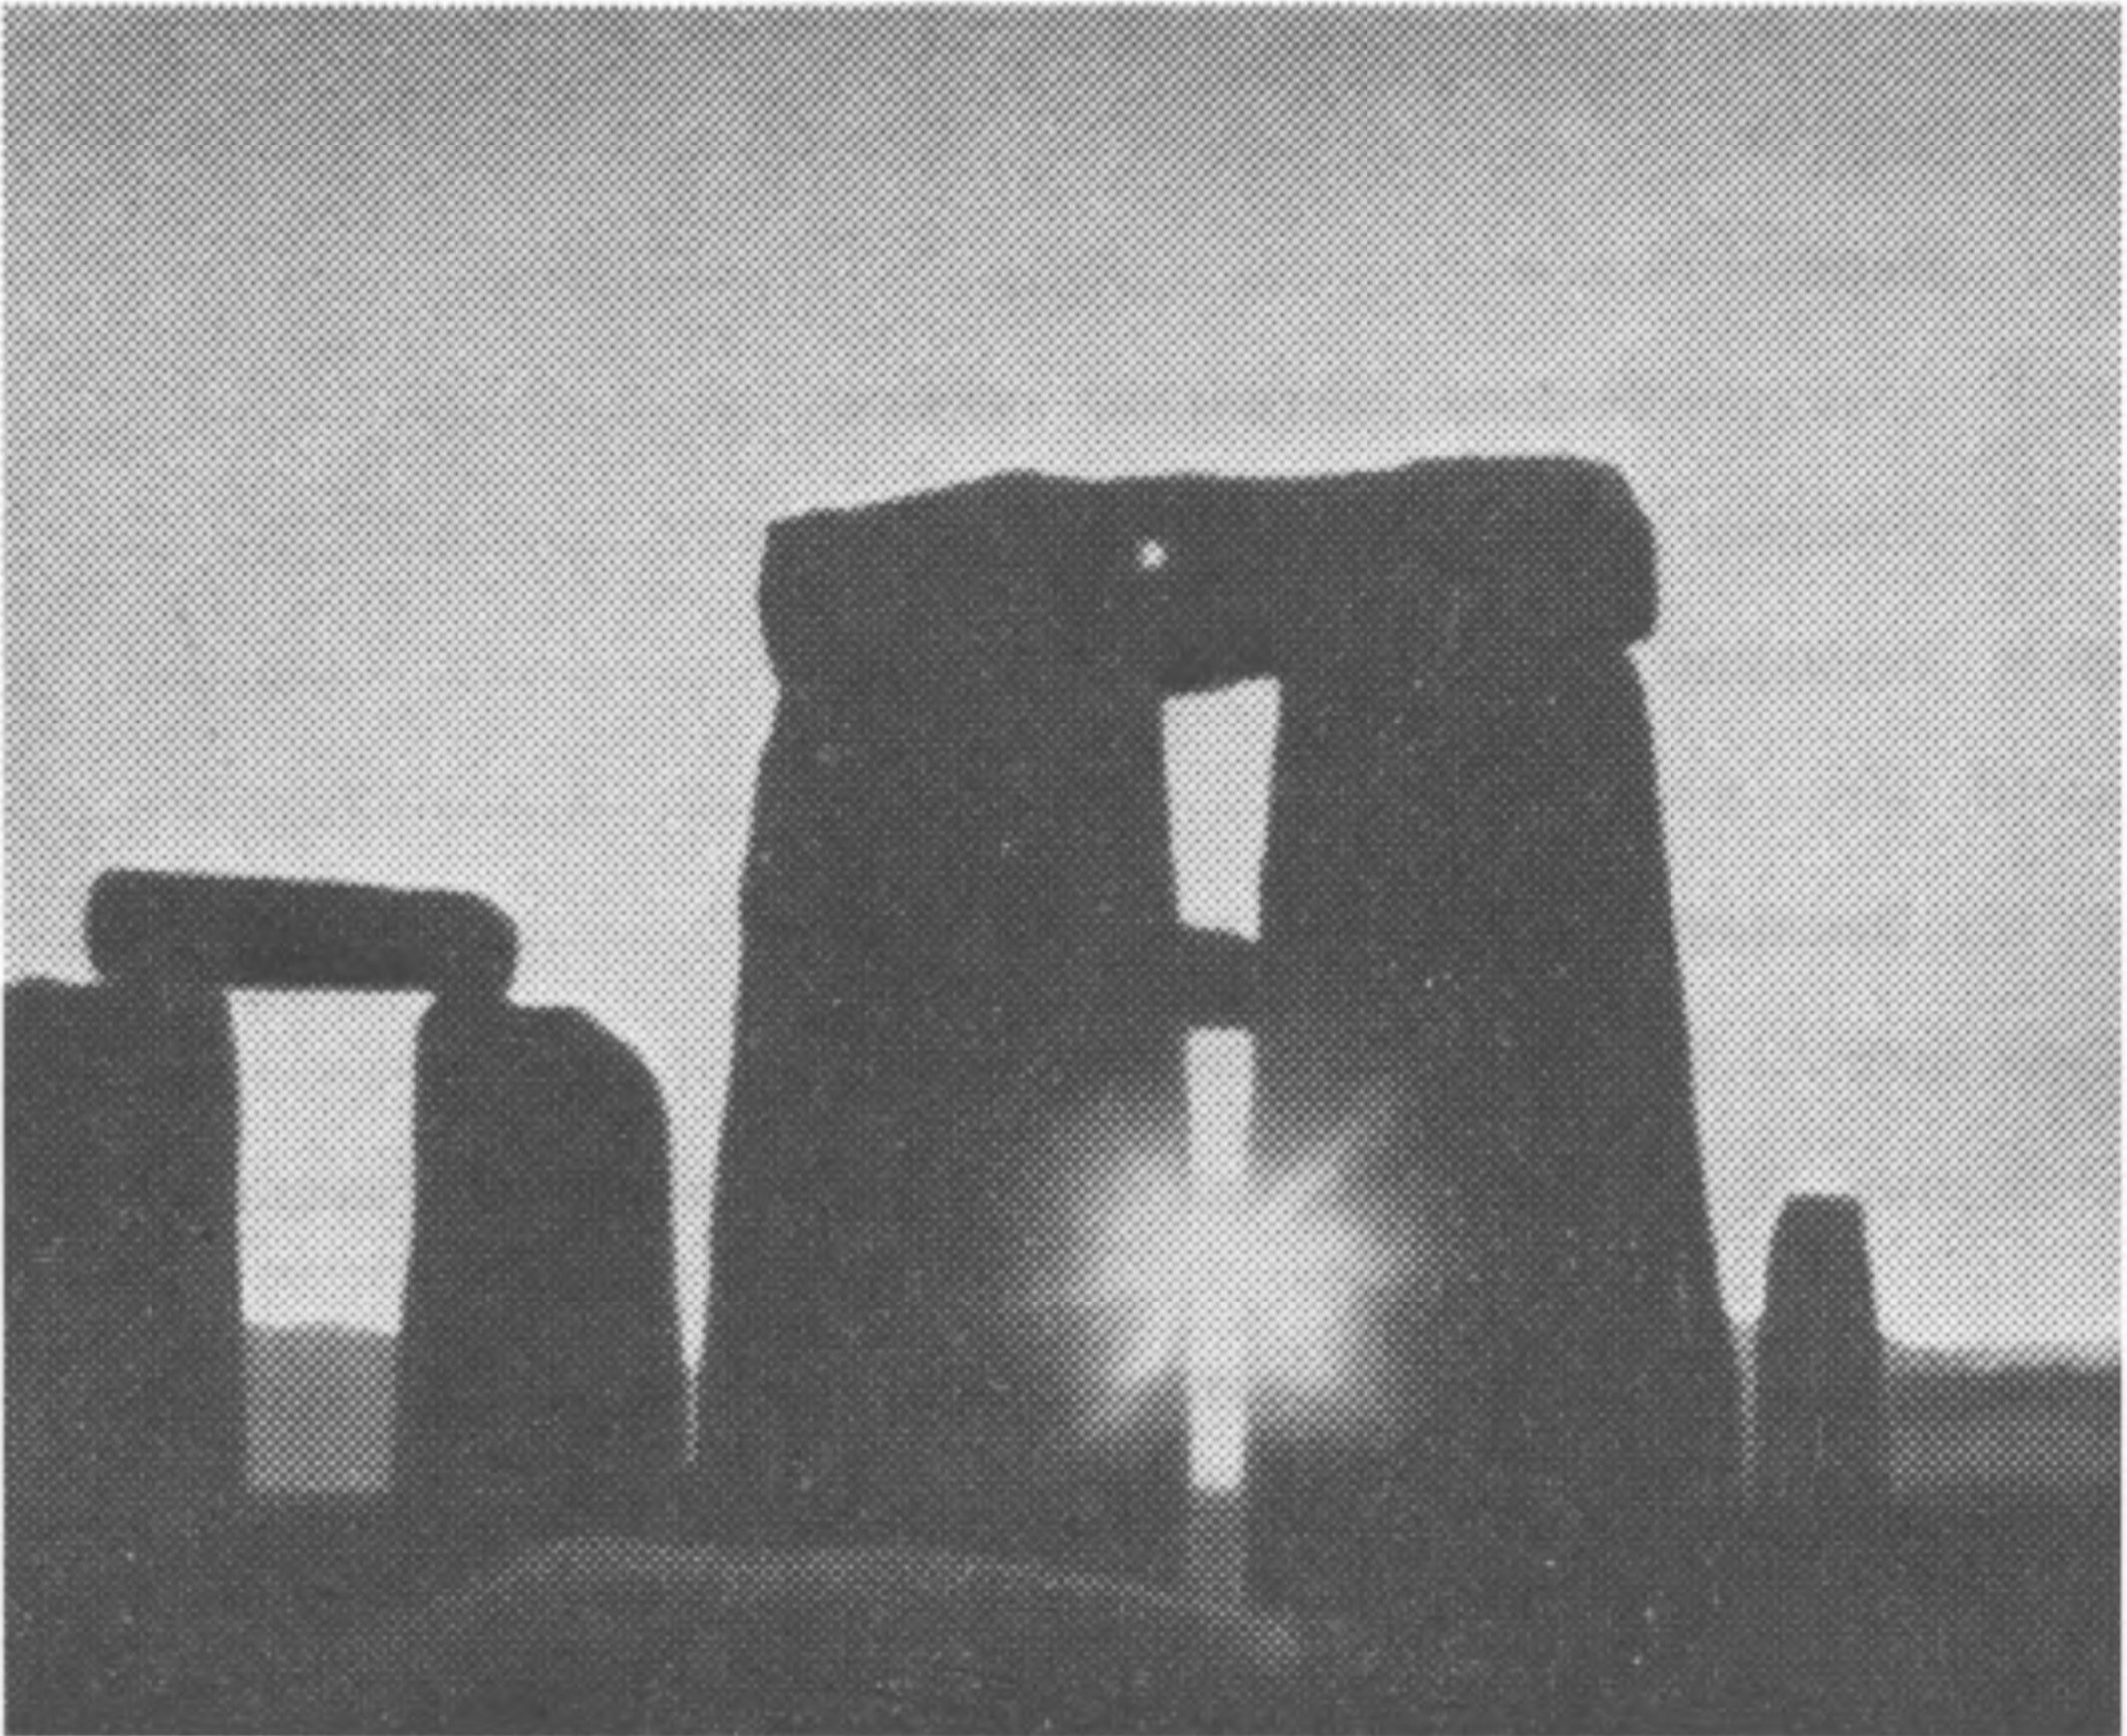 Фото 21. Солнце в день зимнего солнцестояния, видимое через трилит восхода Солнца. Снимок сделан широкоугольным объективом в декабре 1964 г.